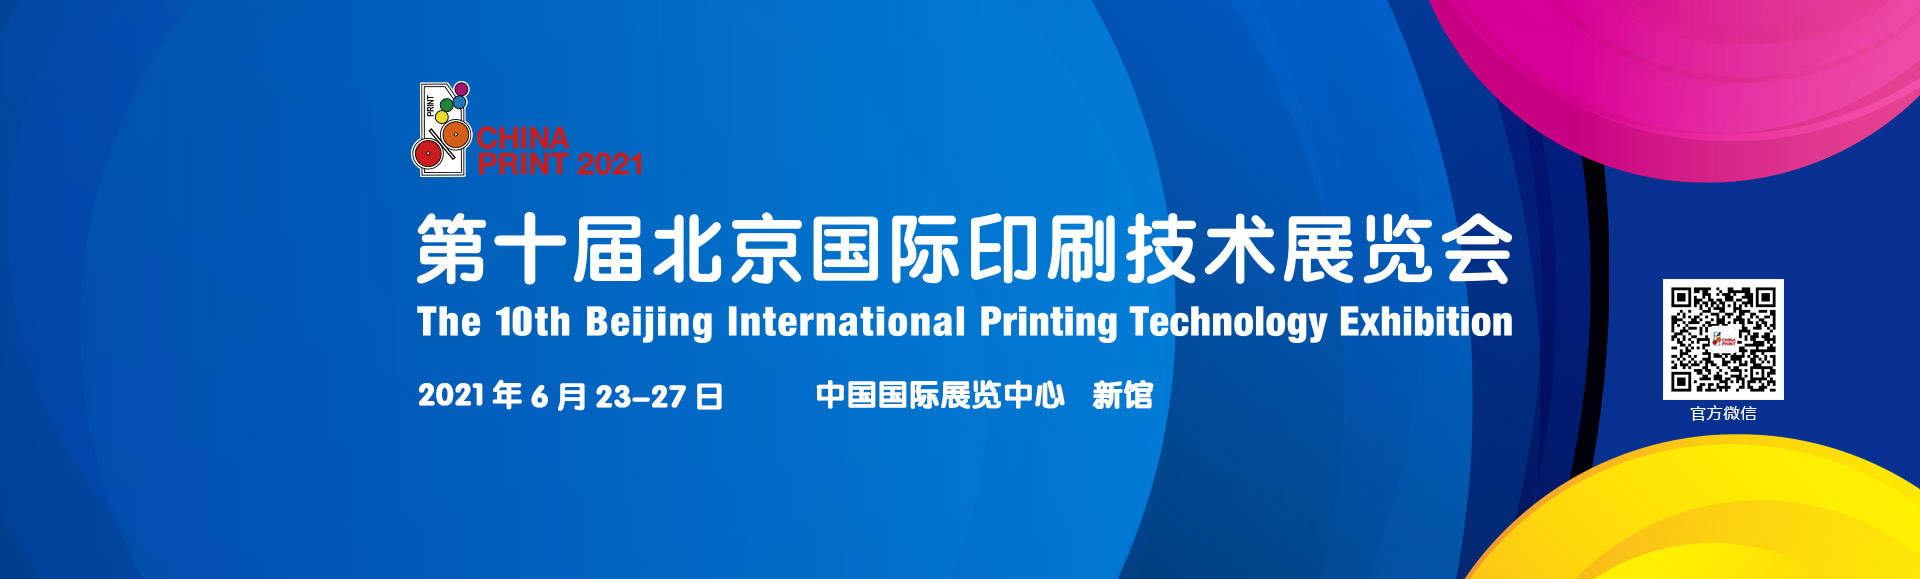 2021第十届北京国际印刷技术展览会